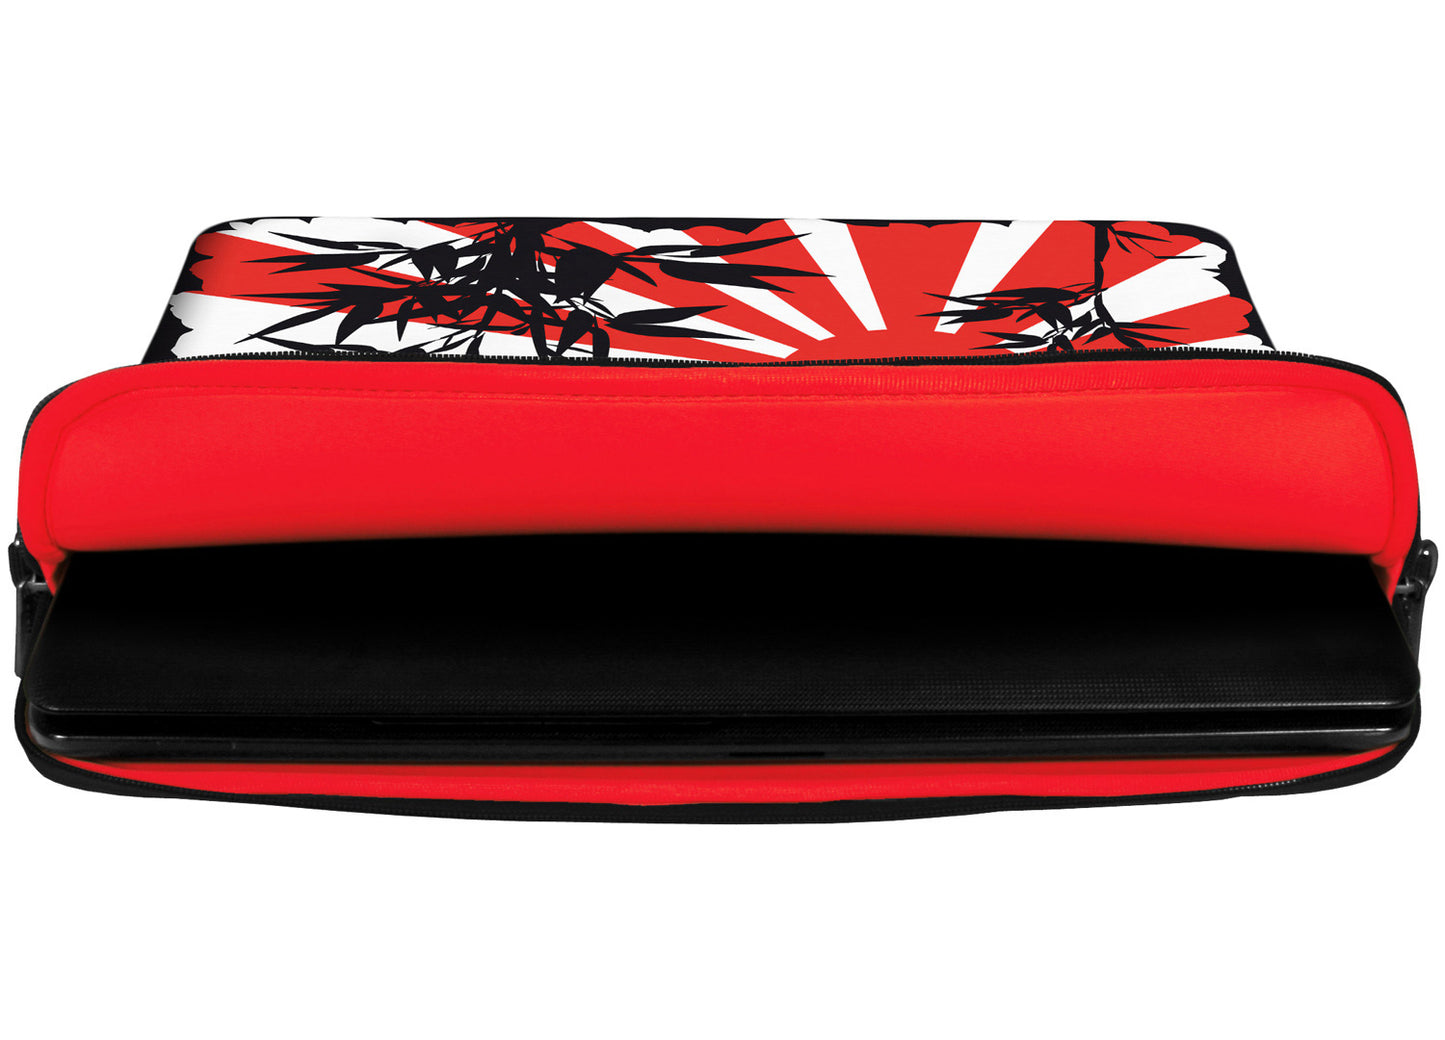 Innenansicht mit Schutzlippen der LS150 Bamboo Designer Laptop Tasche in rot aus wasserabweisendem Neopren